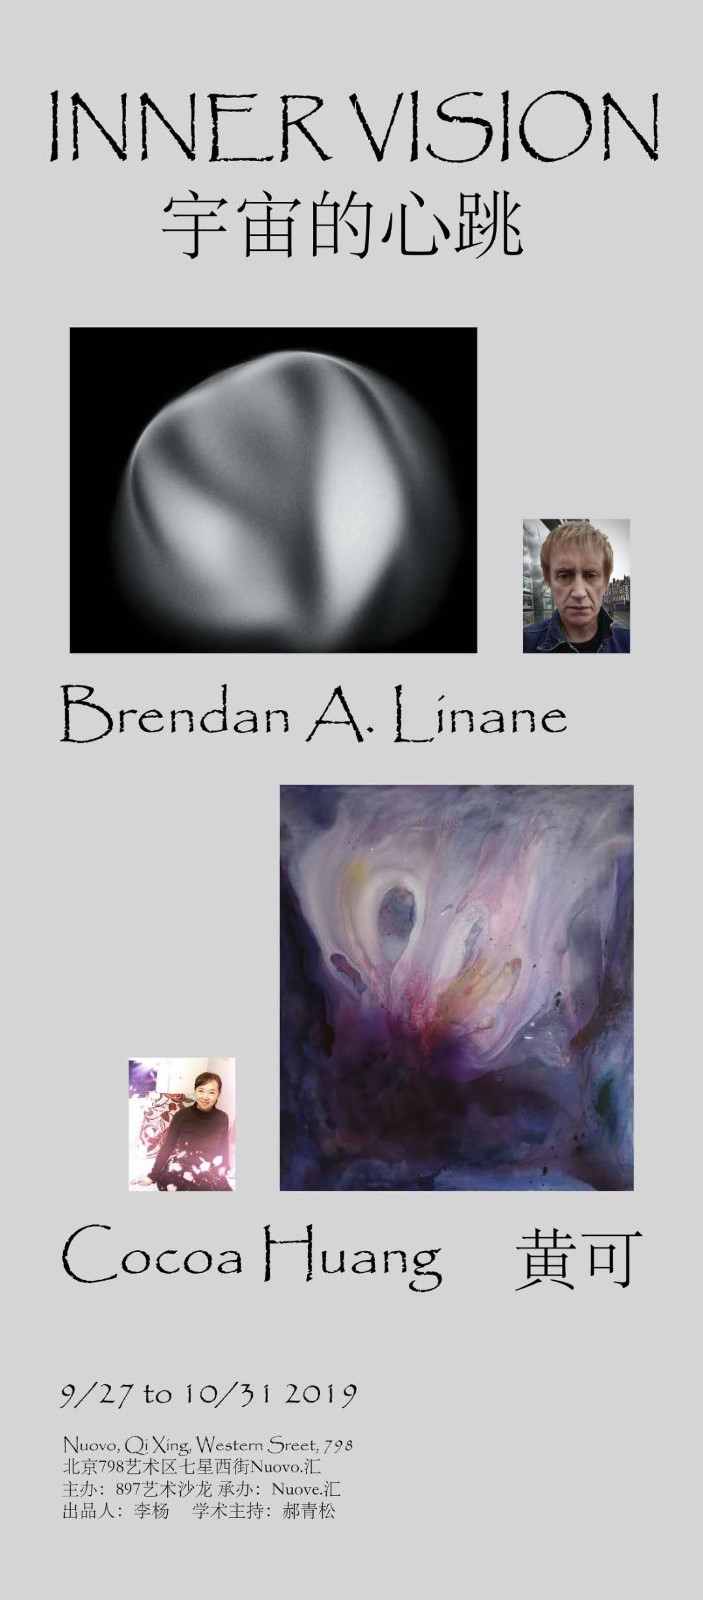 “宇宙的心跳-Inner vision”Brendan &Cocoa 双个展